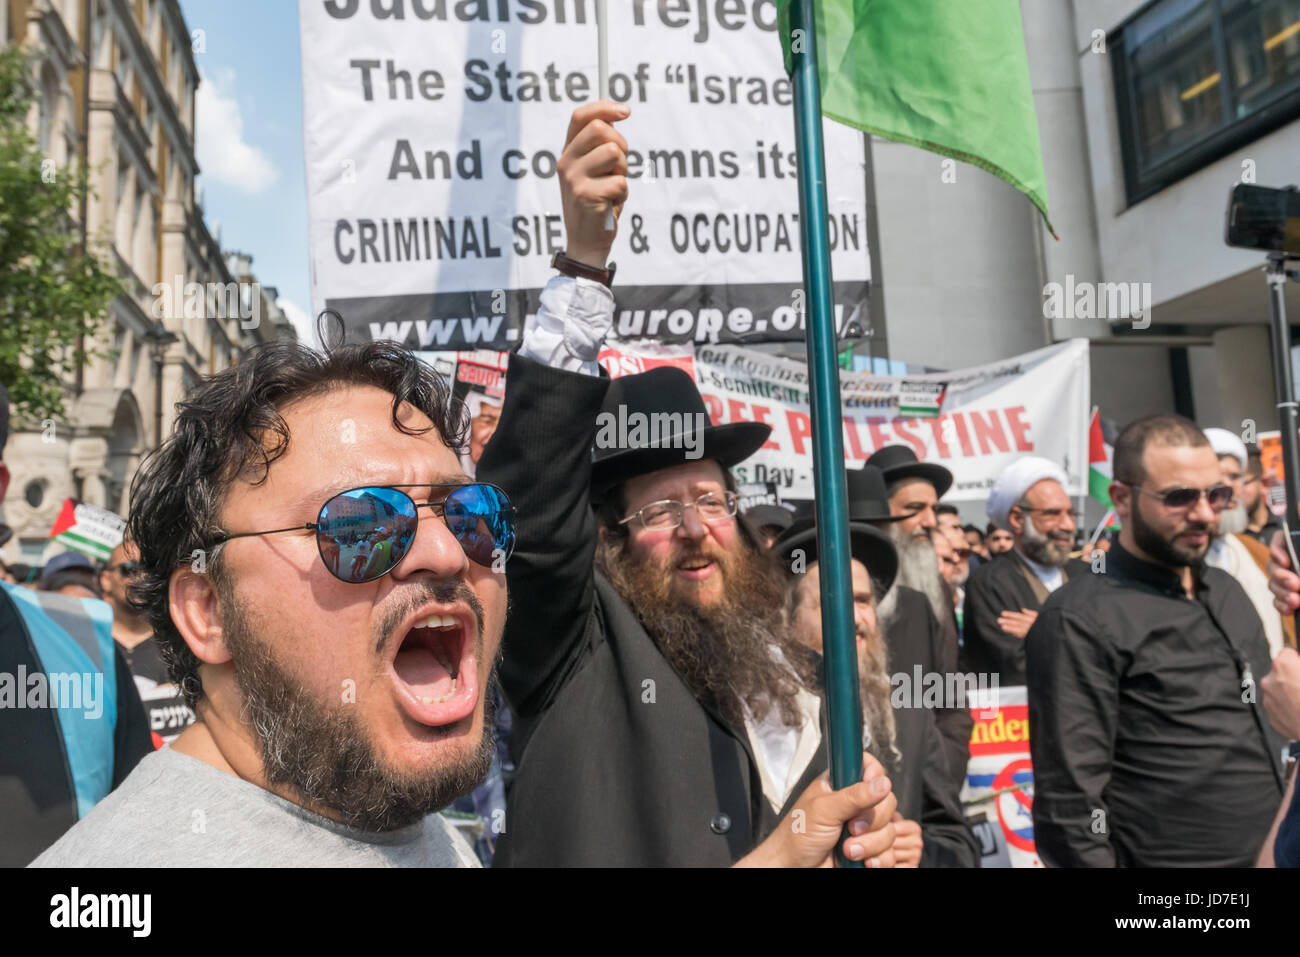 Giugno 18, 2017 - Londra, Regno Unito - Londra, Regno Unito. Il 18 giugno 2017.persone all'inizio dell'annuale Al Quds (Gerusalemme) giorno di marzo a Londra per rispondere alle osservazioni da una manciata di Sionisti attraversata la strada. Il mese di marzo è stato frequentato da diverse migliaia di tutto il paese. Organizzato dal Comitato Quds con la Commissione islamica per i diritti dell'uomo e supportata da diversi gruppi tra cui l'arresto della coalizione bellica, associazione musulmana di Bretagna e gli ebrei per boicottare merci israeliane era guidato da imam e Neturei Karta anti-sionista di ebrei, è chiamato per la libertà per la Palestina e per tutti i popoli oppressi di ac Foto Stock